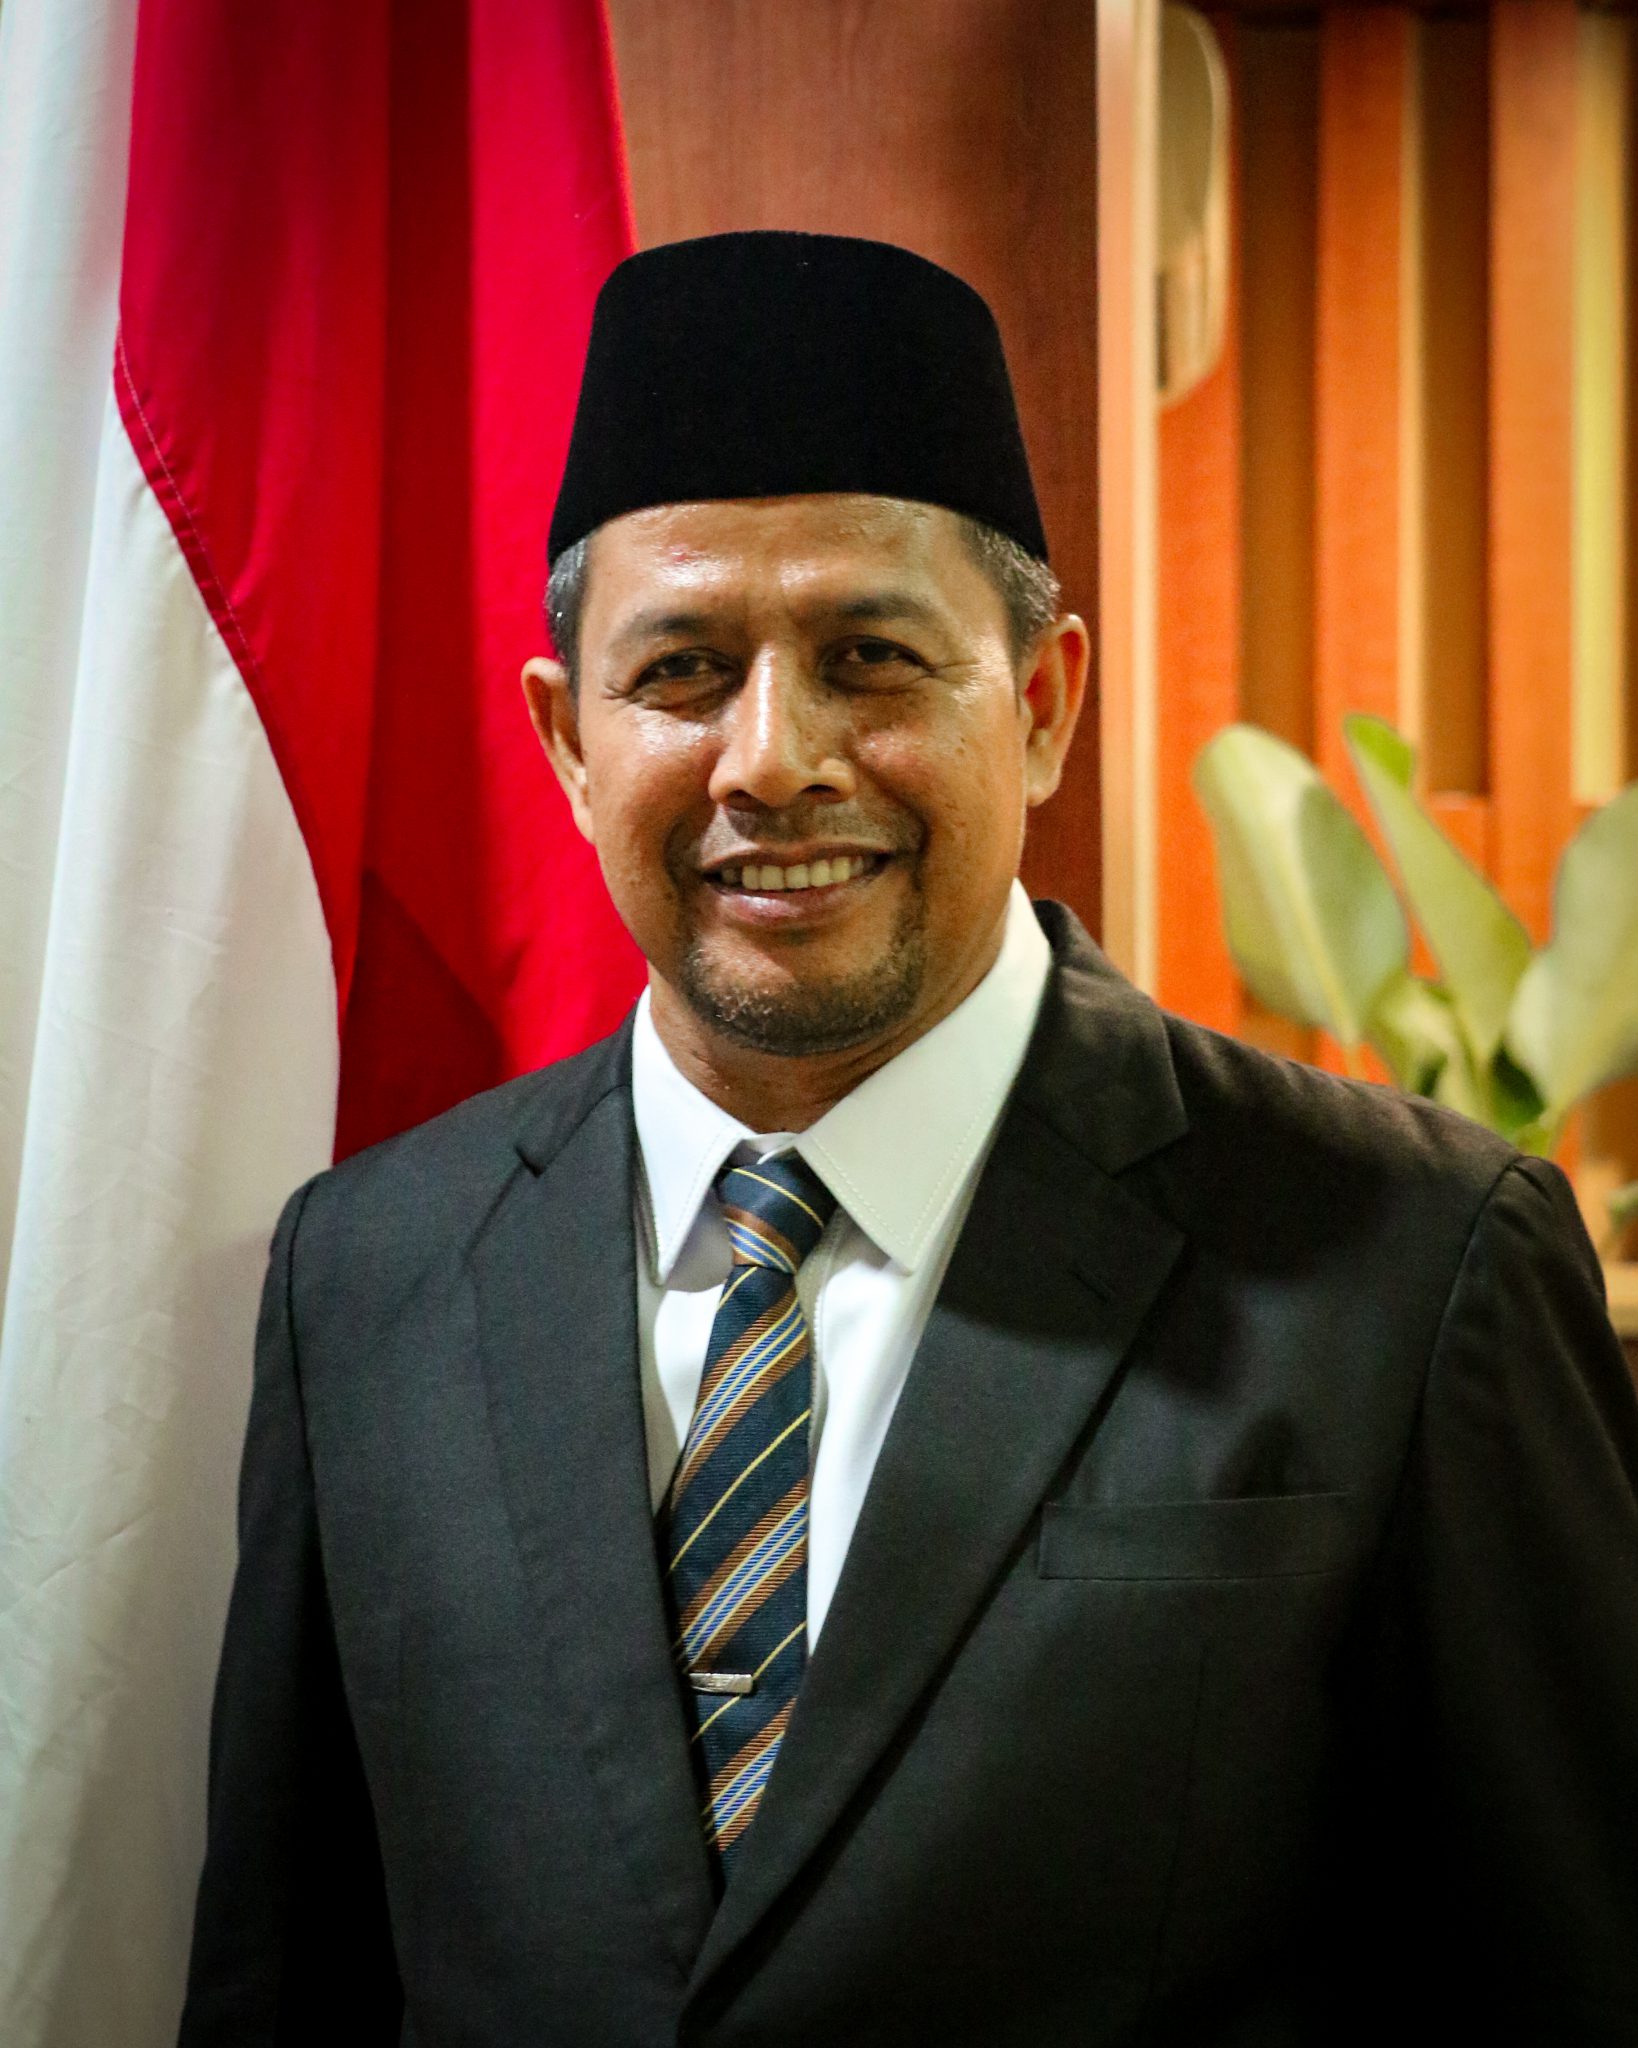 Semua pihak harus hindari peluang hadirnya kembali bank konvensional ke Aceh